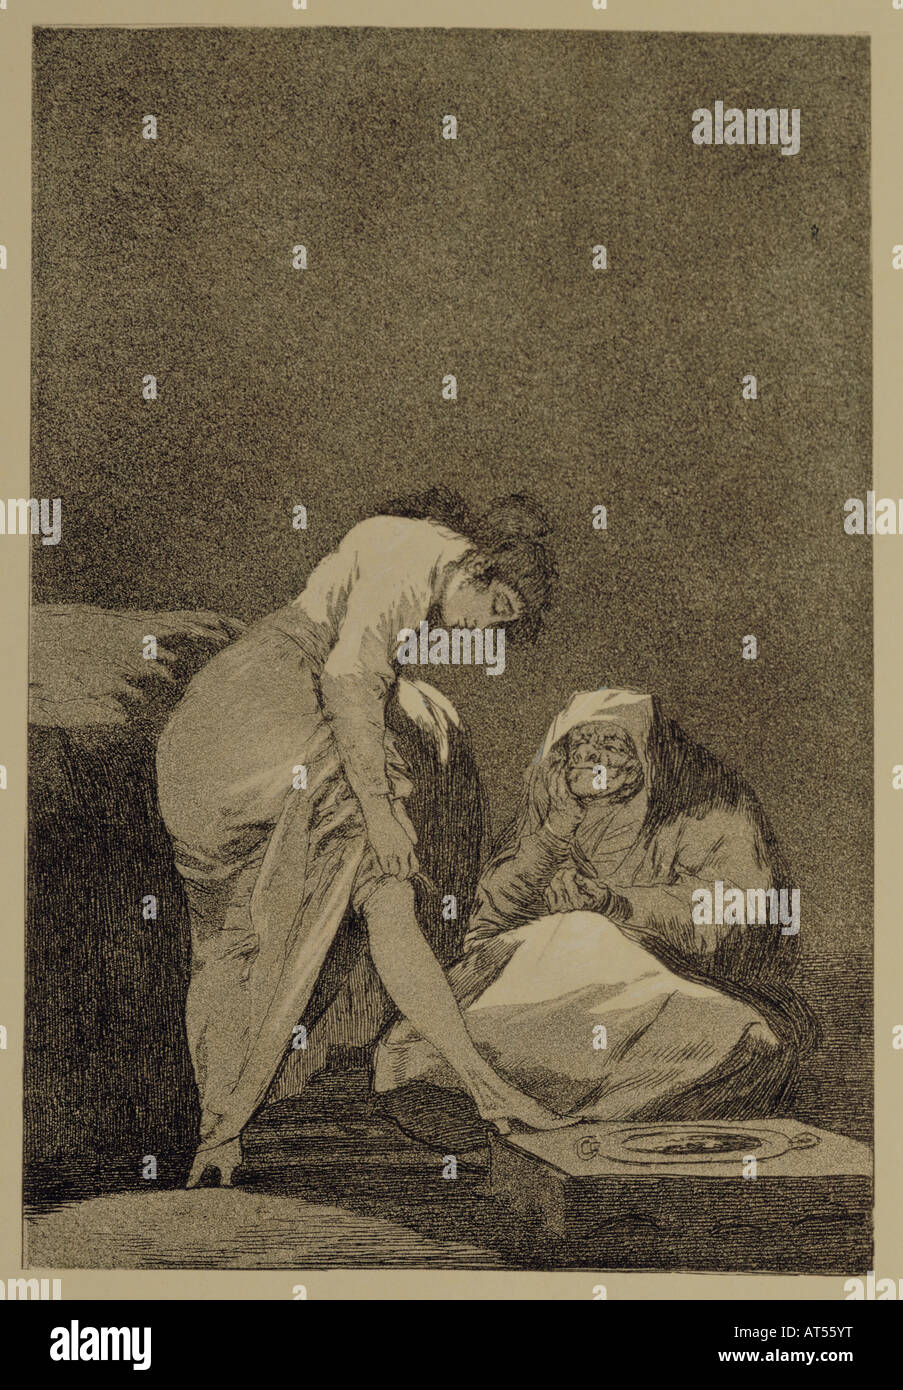 Bildende Kunst, Goya y Lucientes, Francisco de (1746 - 1828), Grafik, Radierung, "Bien tirada Esta', aus der Serie 'Los Caprichos' (Caprices), 1796 / 1797, 18,6 cm x 12,5 cm, Privatsammlung, Artist's Urheberrecht nicht gelöscht werden Stockfoto